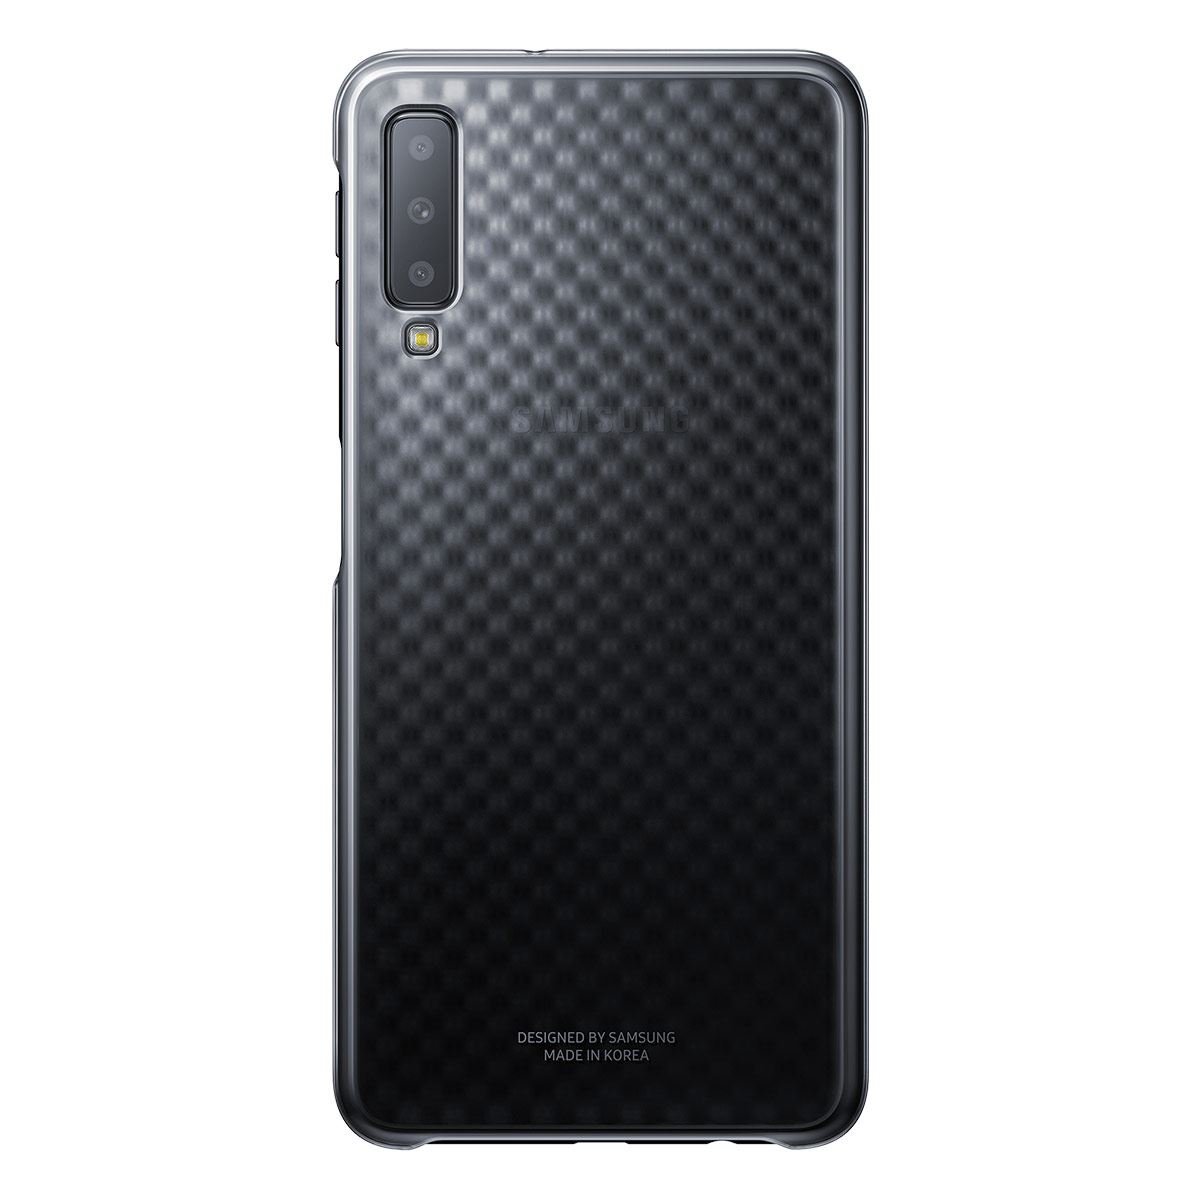 Funda para Samsung A7 Color Negro Degradado